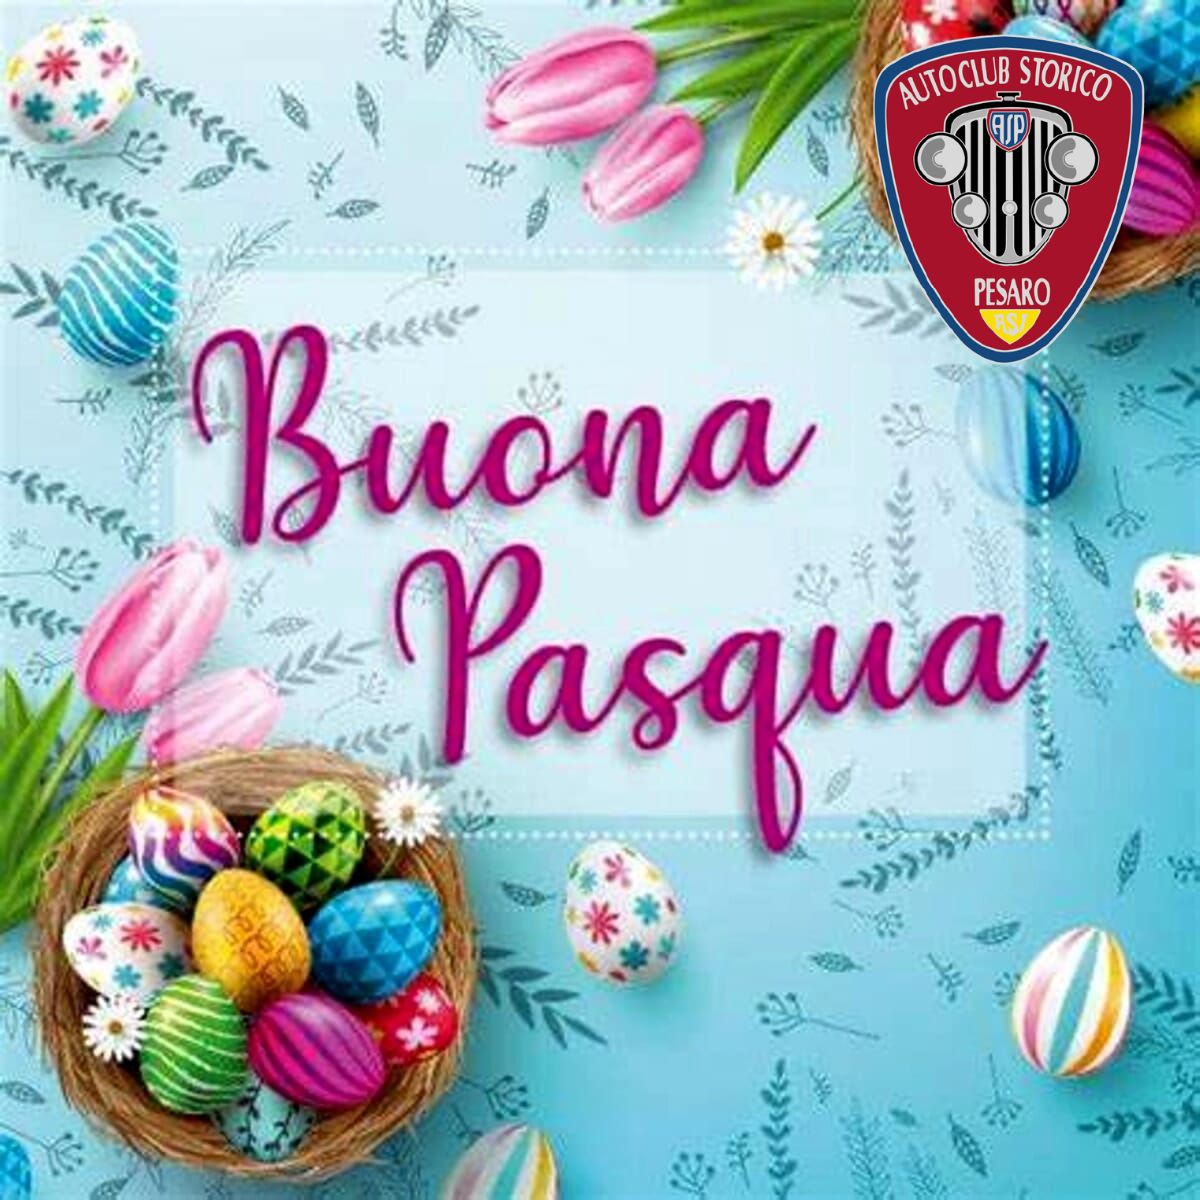 Il presidente insieme a tutto il consiglio direttivo augura una serena Pasqua a tutti i soci dell’Autoclub Storico Pesaro Dorino Serafini